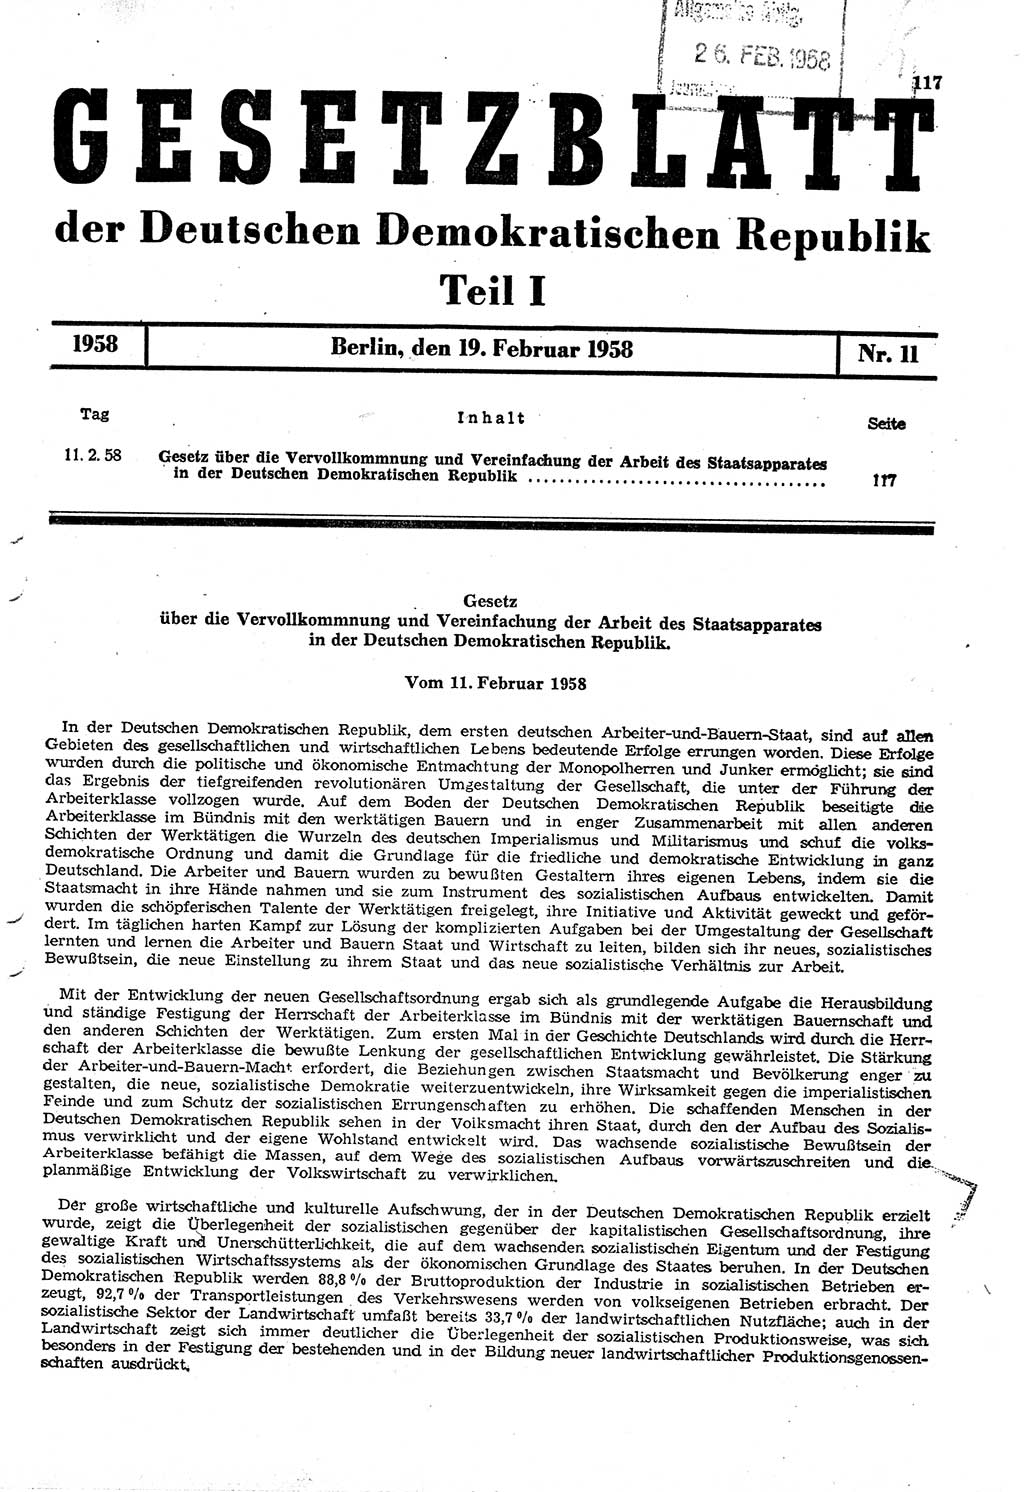 Gesetzblatt (GBl.) der Deutschen Demokratischen Republik (DDR) Teil Ⅰ 1958, Seite 117 (GBl. DDR Ⅰ 1958, S. 117)